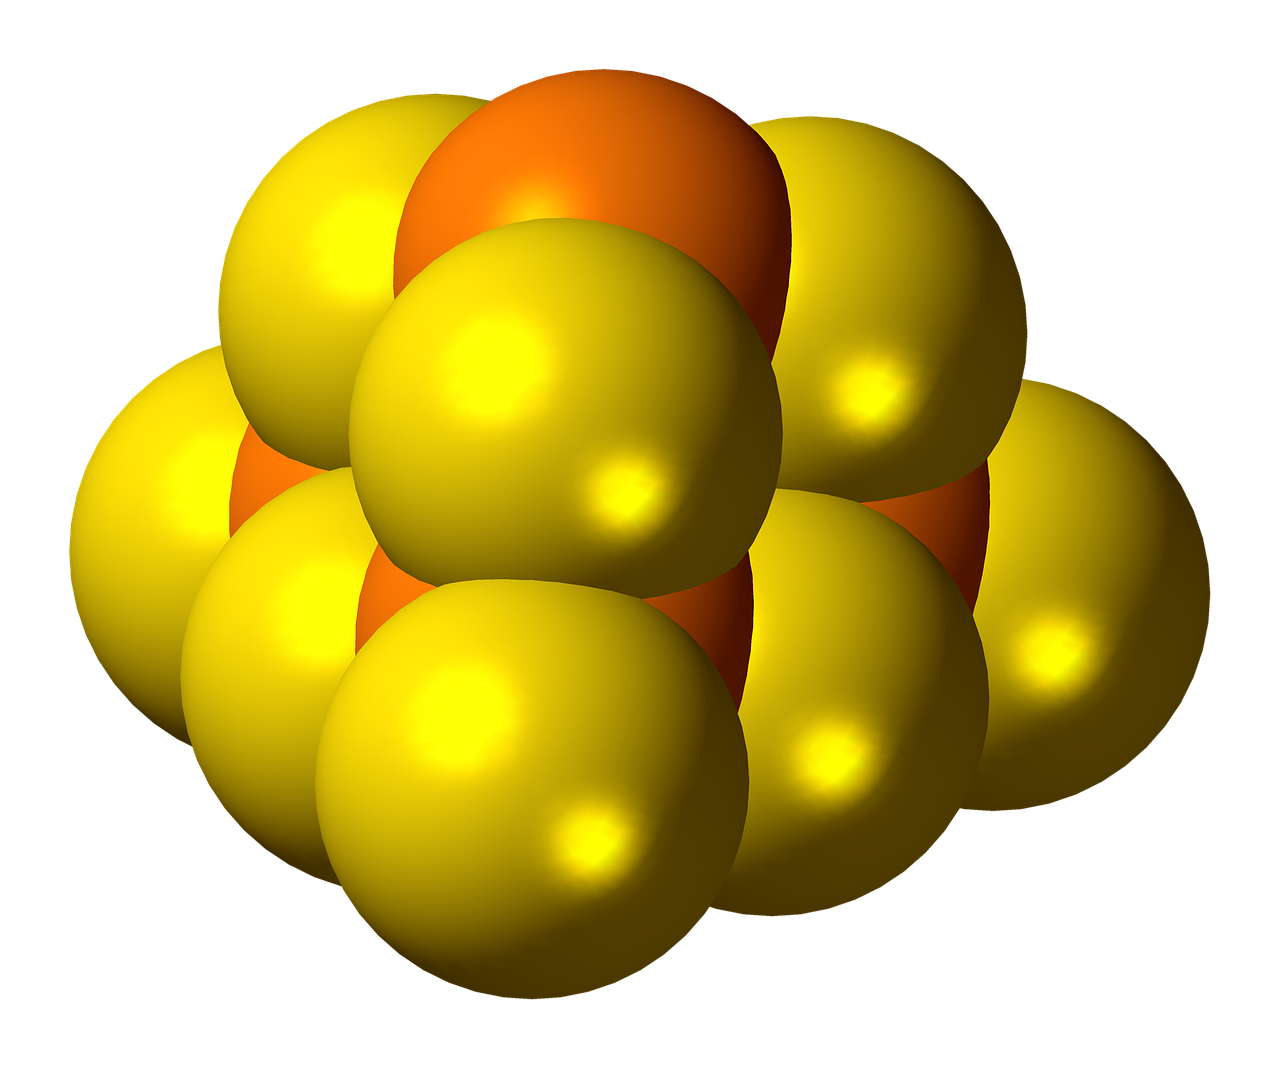 Fosforo Sulfidas, Molekulė, Modelis, Struktūra, Chemija, Mokslas, Junginys, Tyrimai, Atomai, Nemokamos Nuotraukos